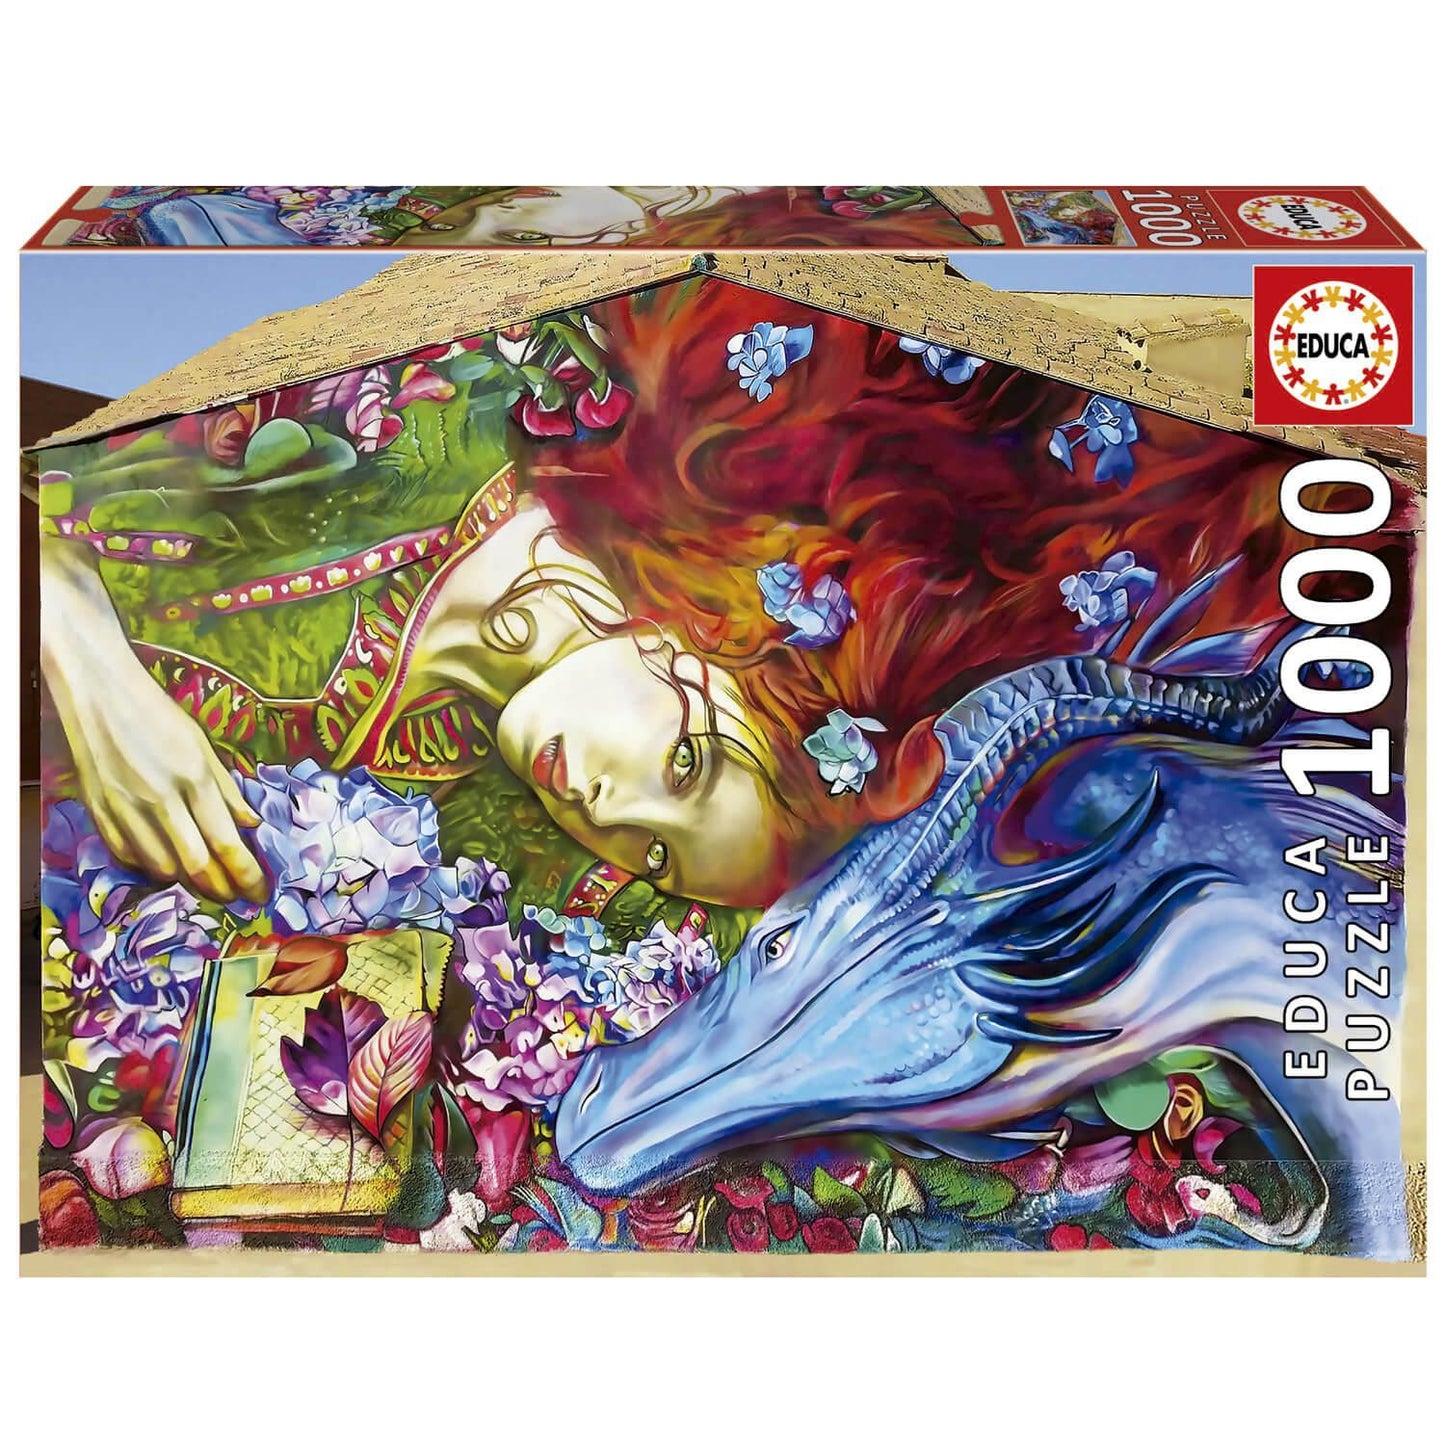 Sant Jordi by Lily Brick 1000 Piece Puzzle